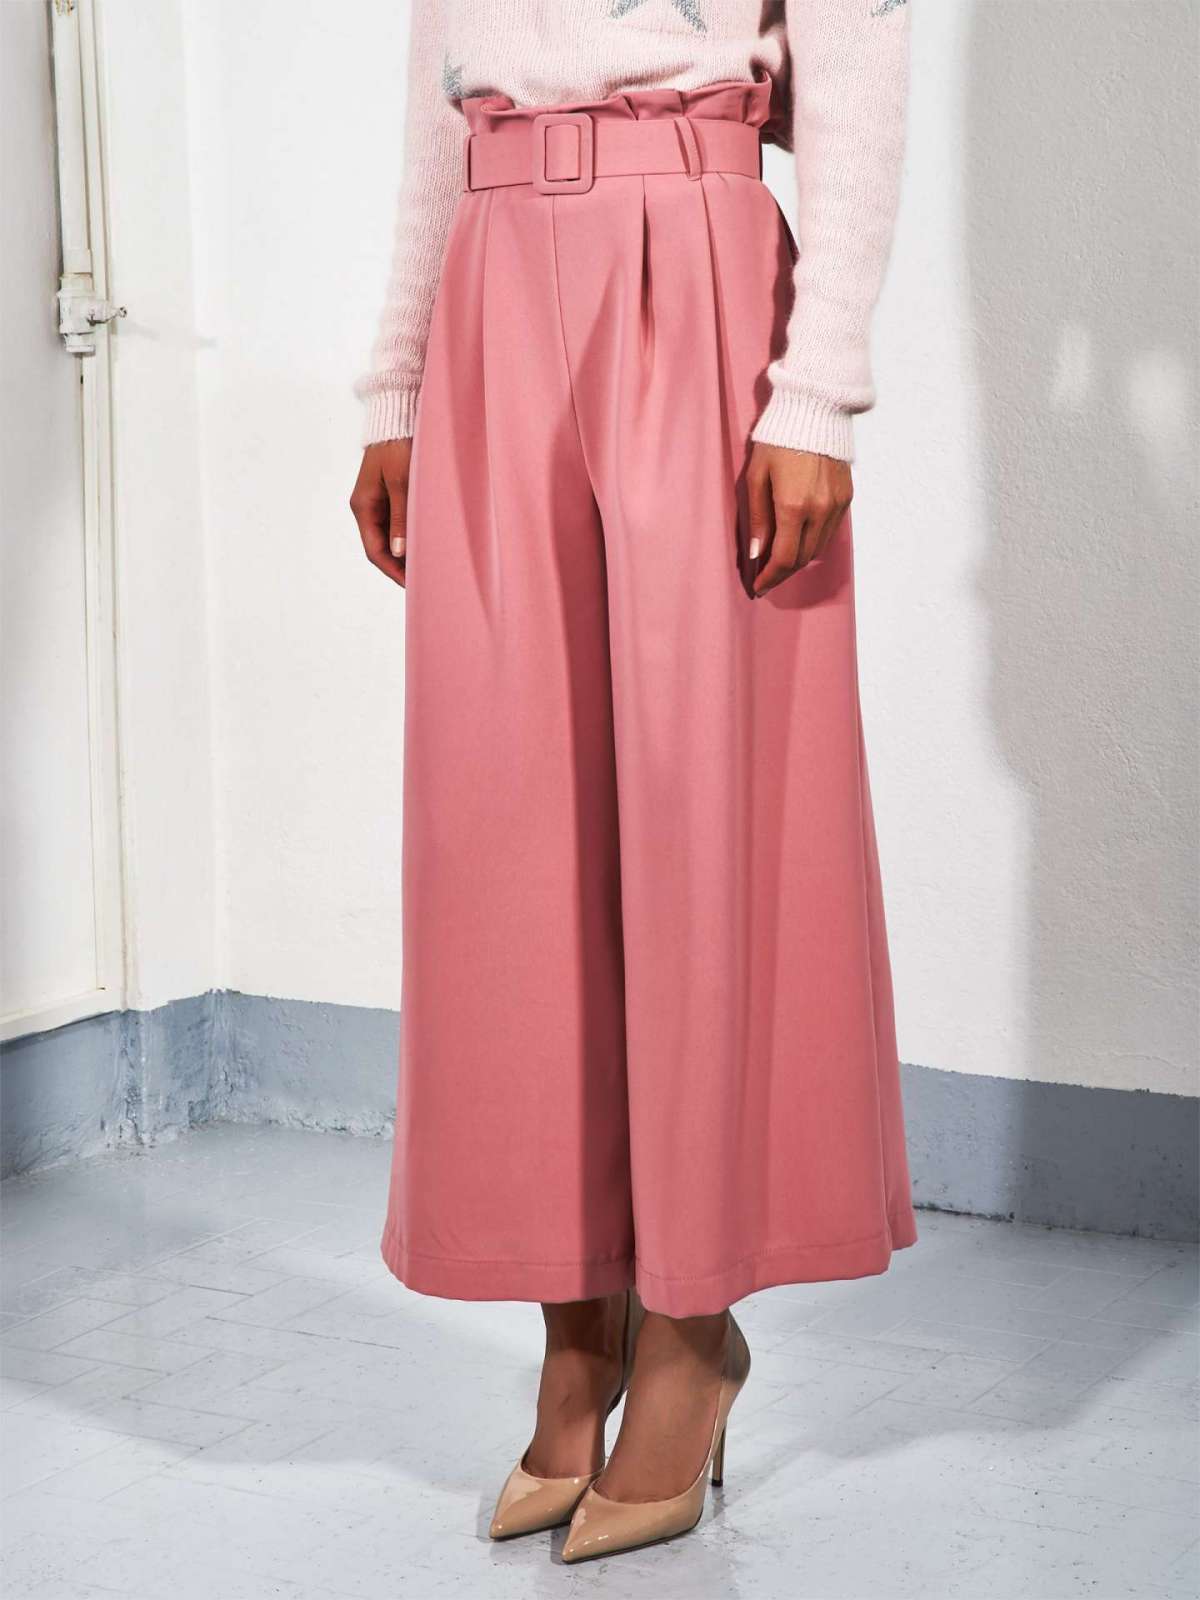 Pantaloni culotte rosa Rinascimento a 89 euro